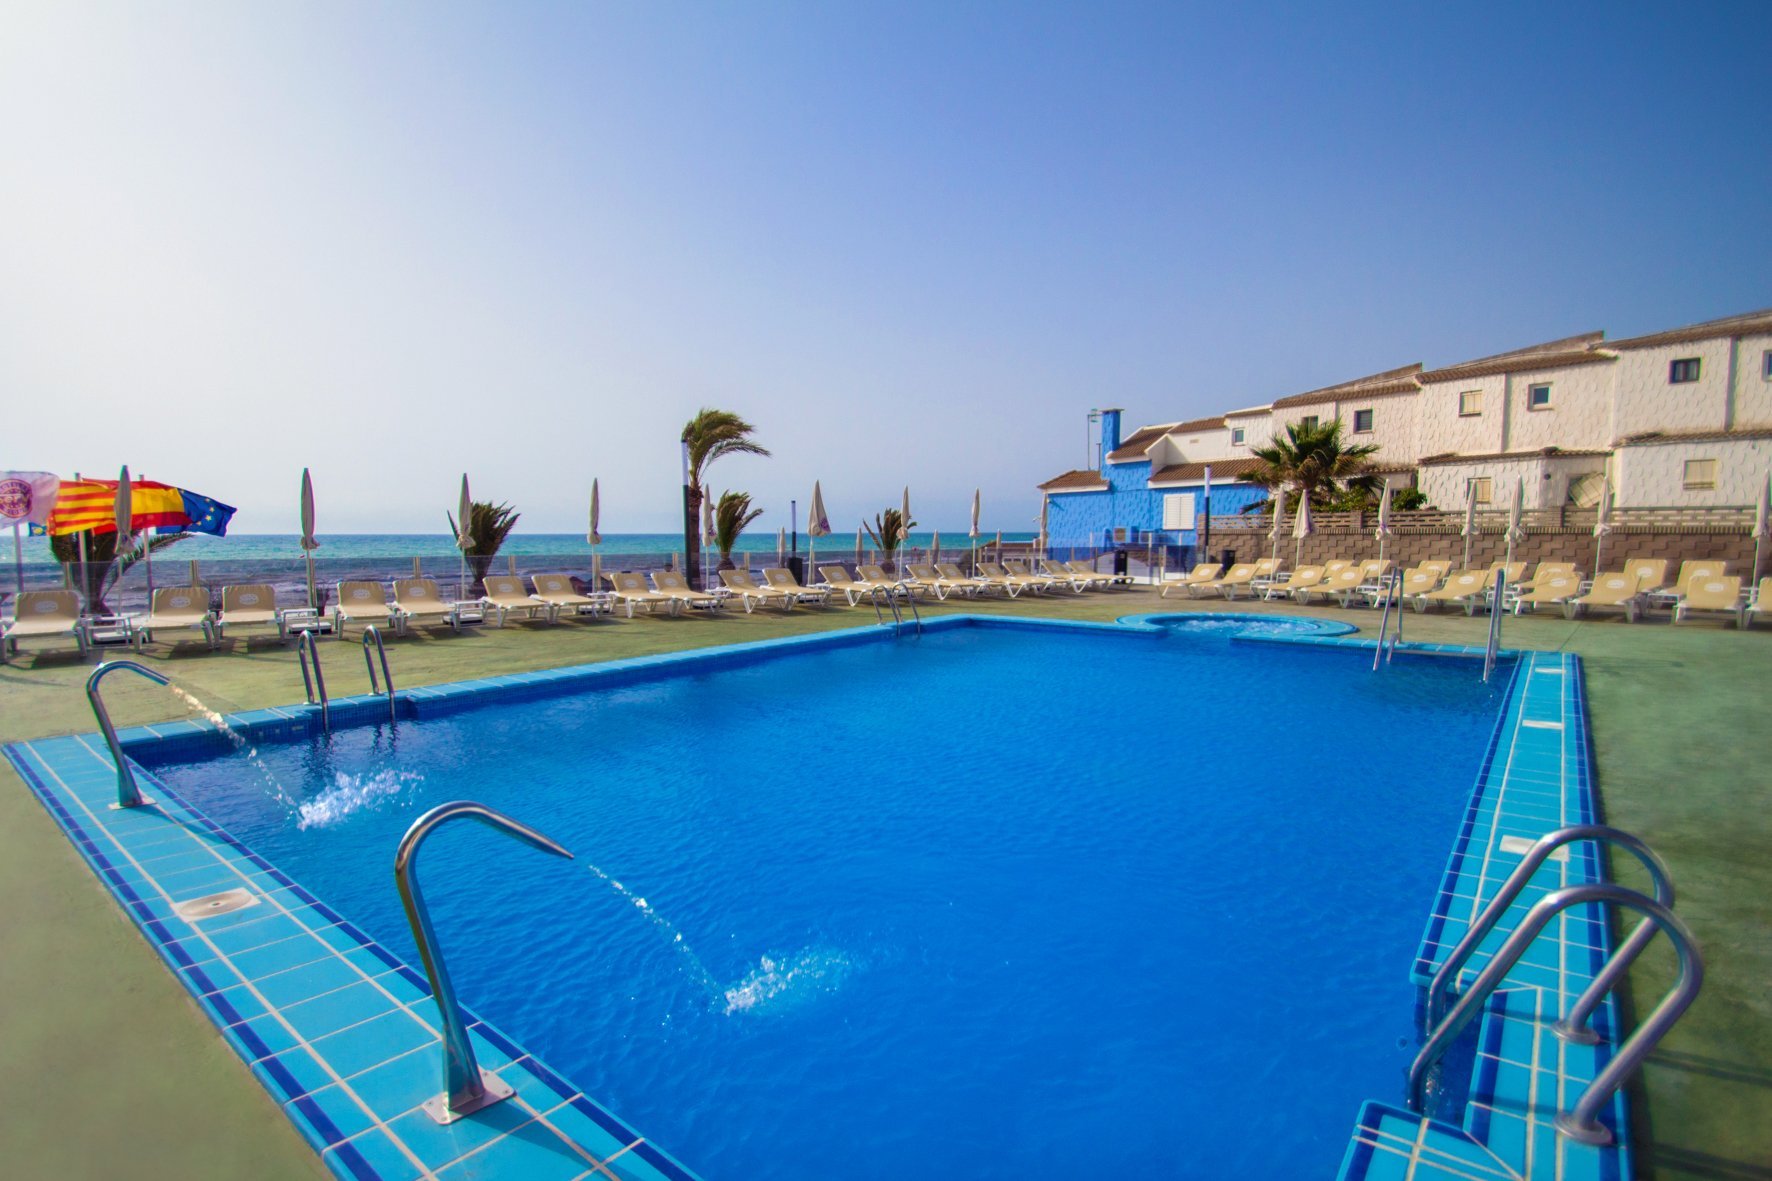 06-oropesa-del-mar-hotel-koral-beach-piscina-04.jpg